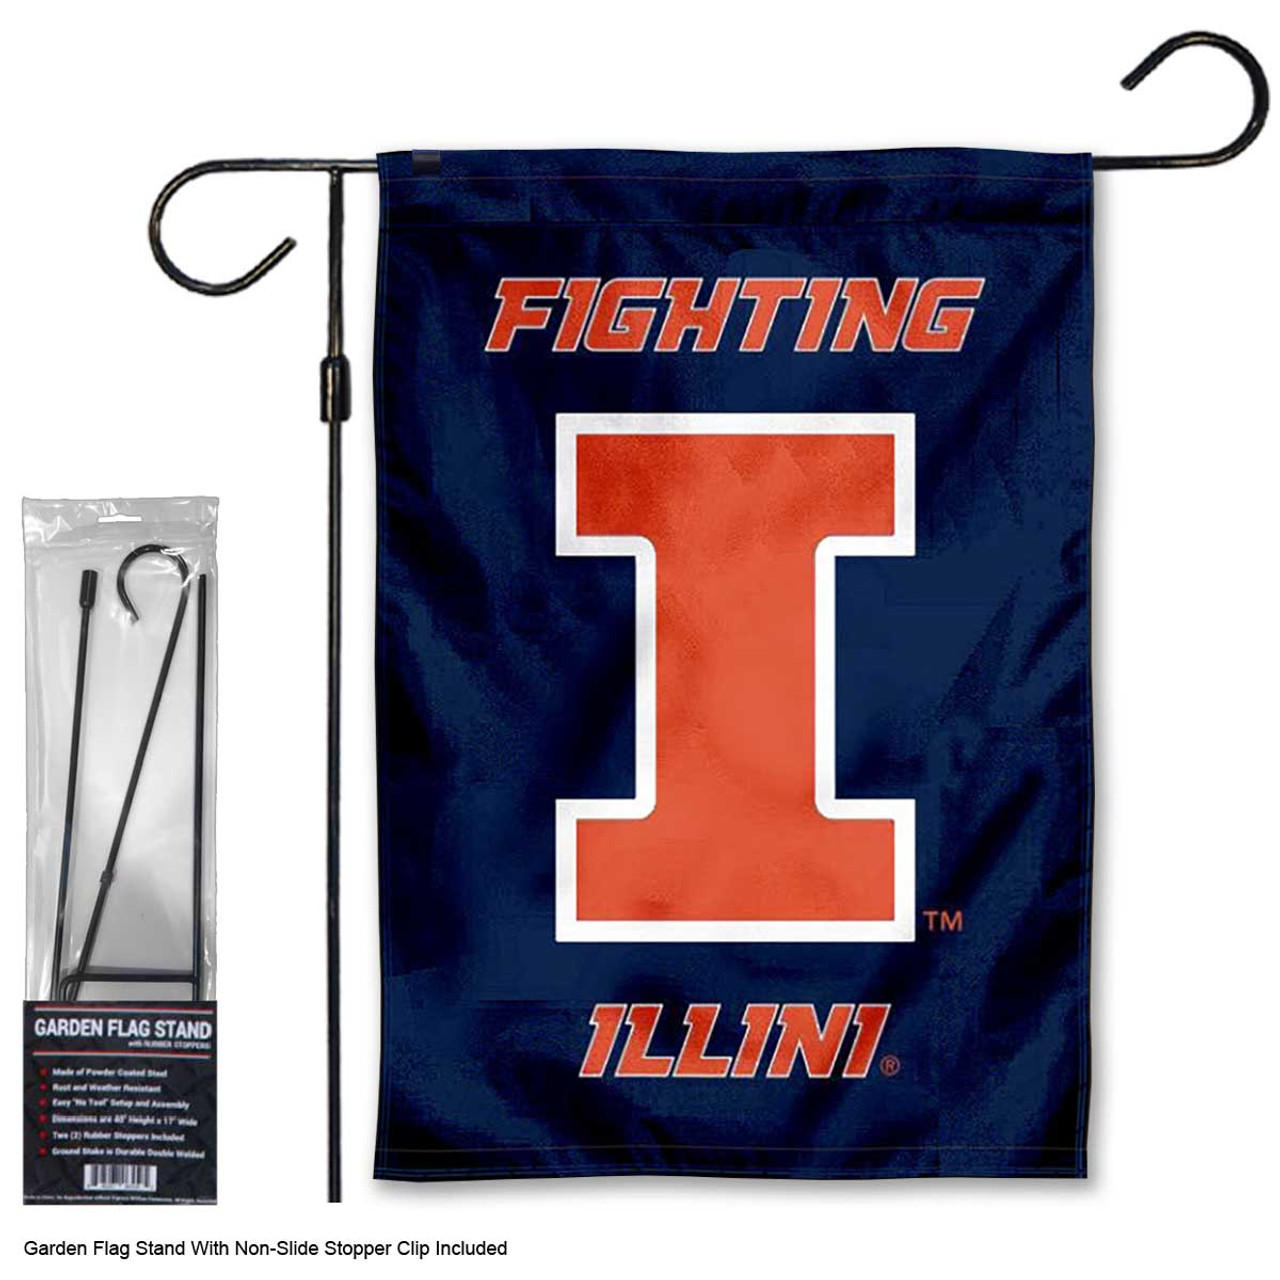 Illinois Fighting Illini 2-Sided Vertical Flag